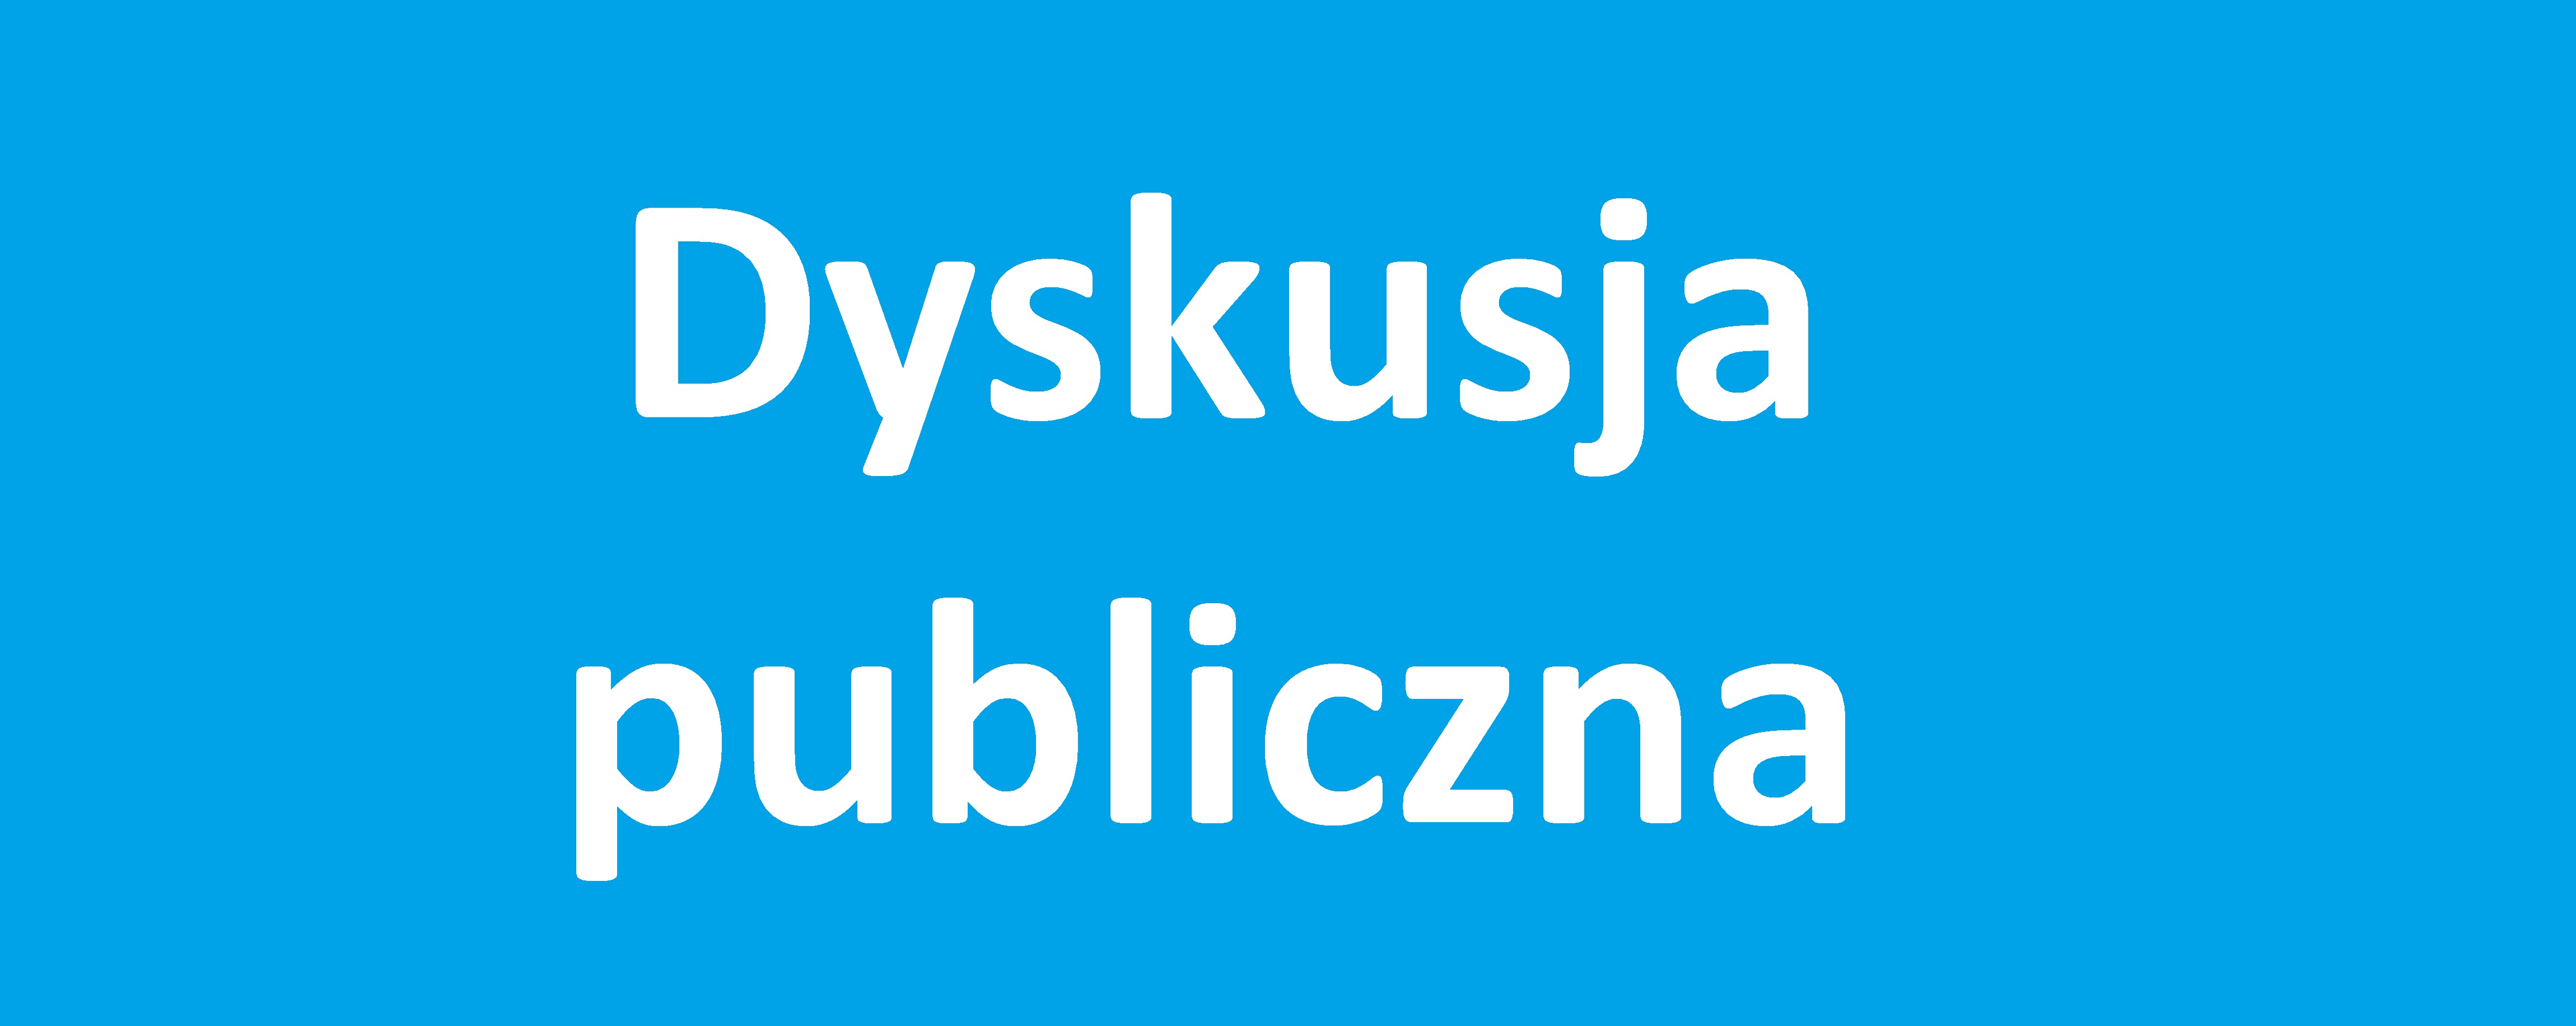 Poznańska MPU organizuje dyskusje publiczne dot. trzech MPZP